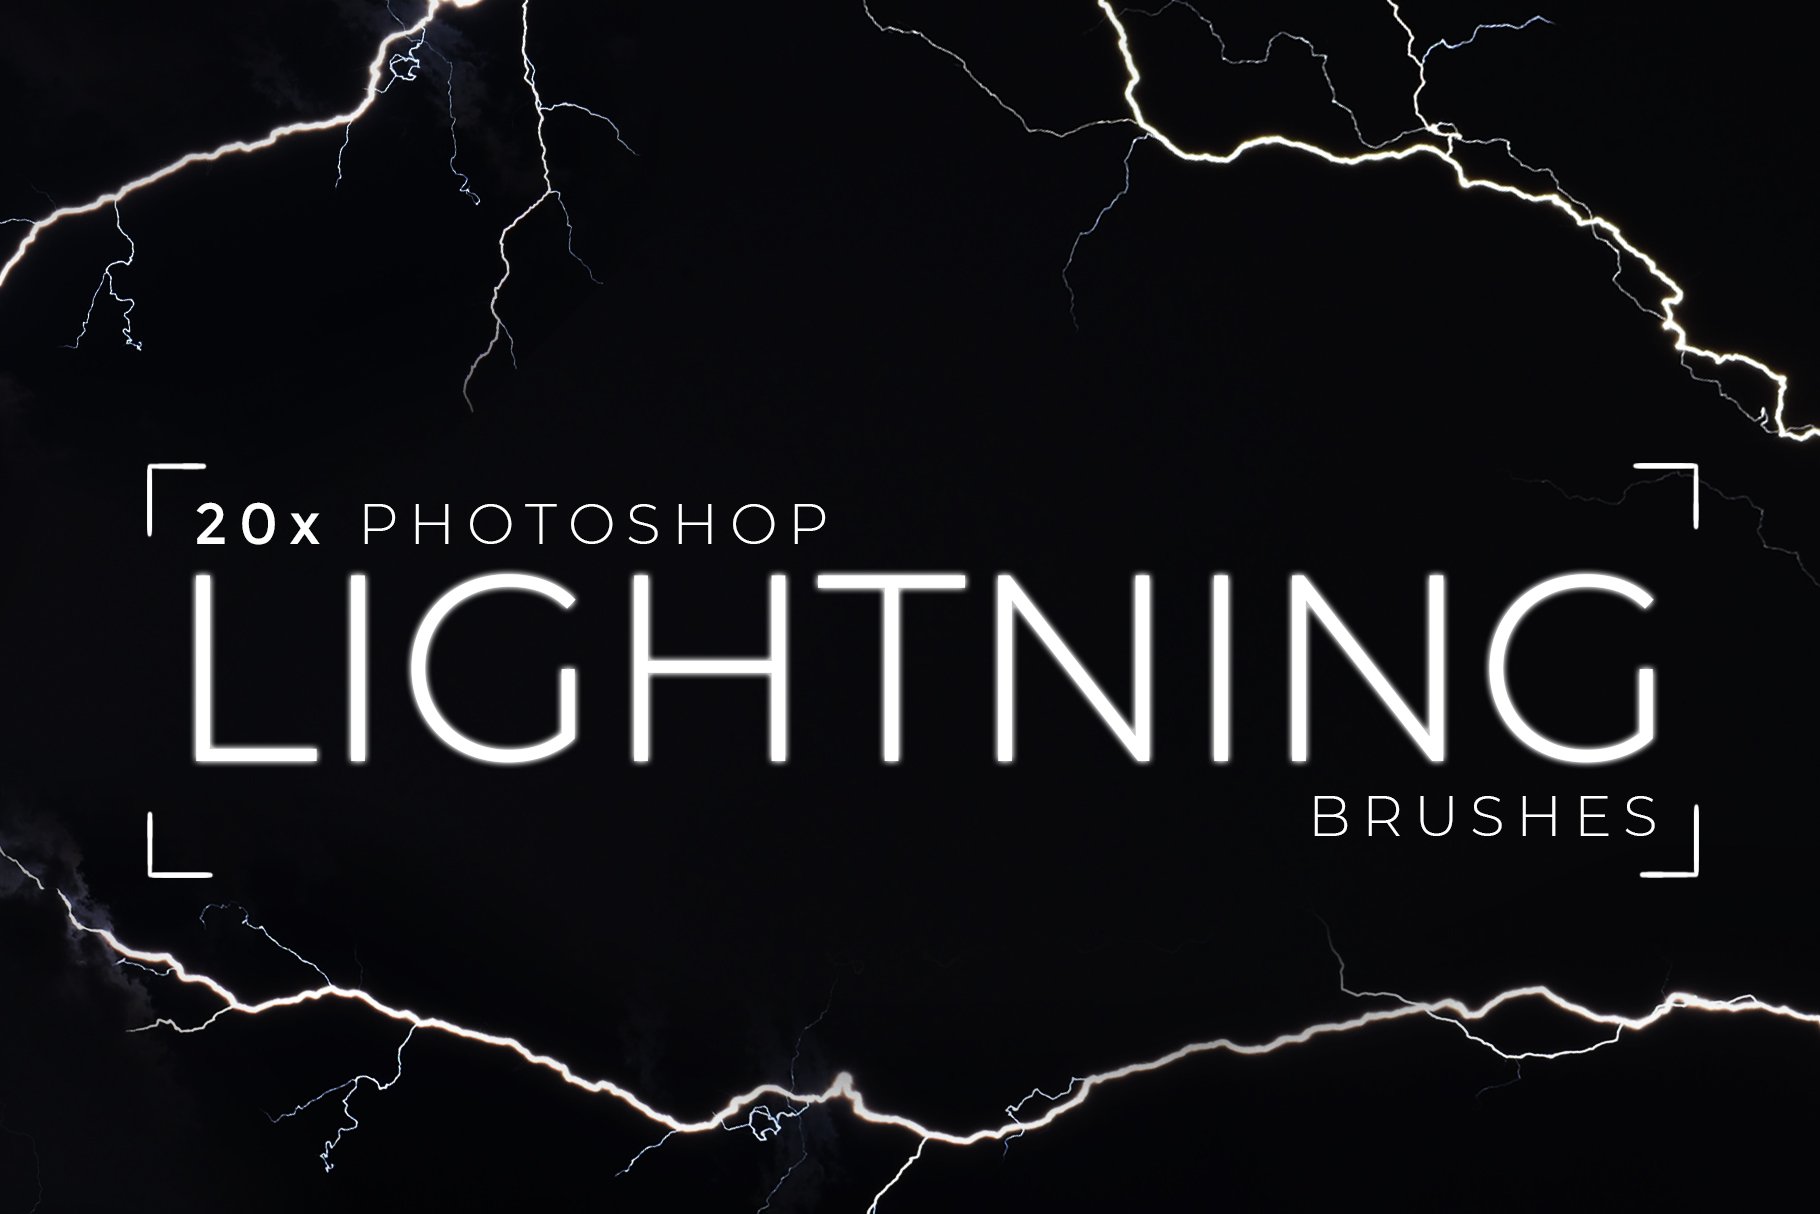 20 Photoshop Lightning Brushescover image.